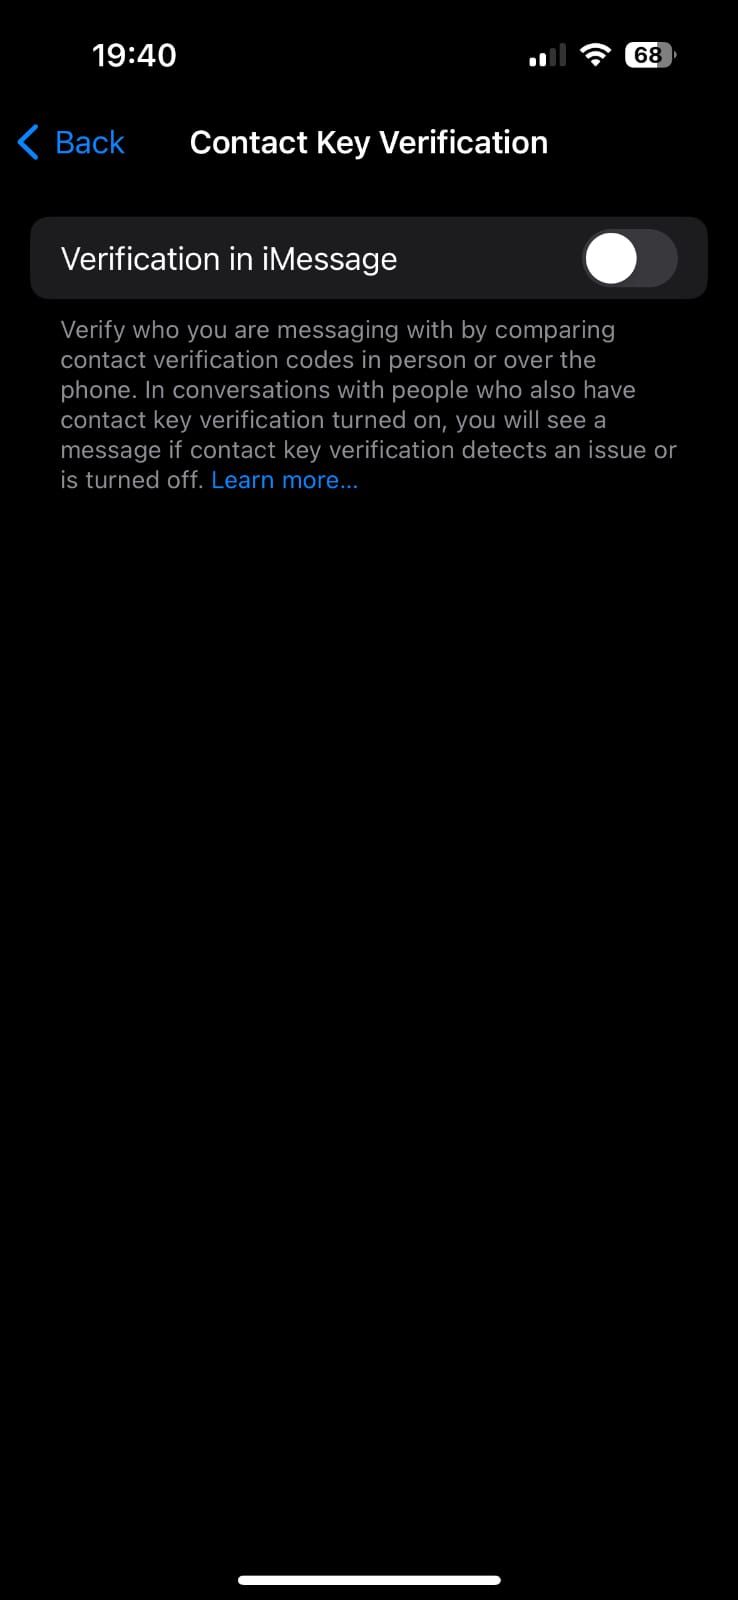 Captura de tela mostrando a página de verificação da chave de contato nas configurações do iPhone